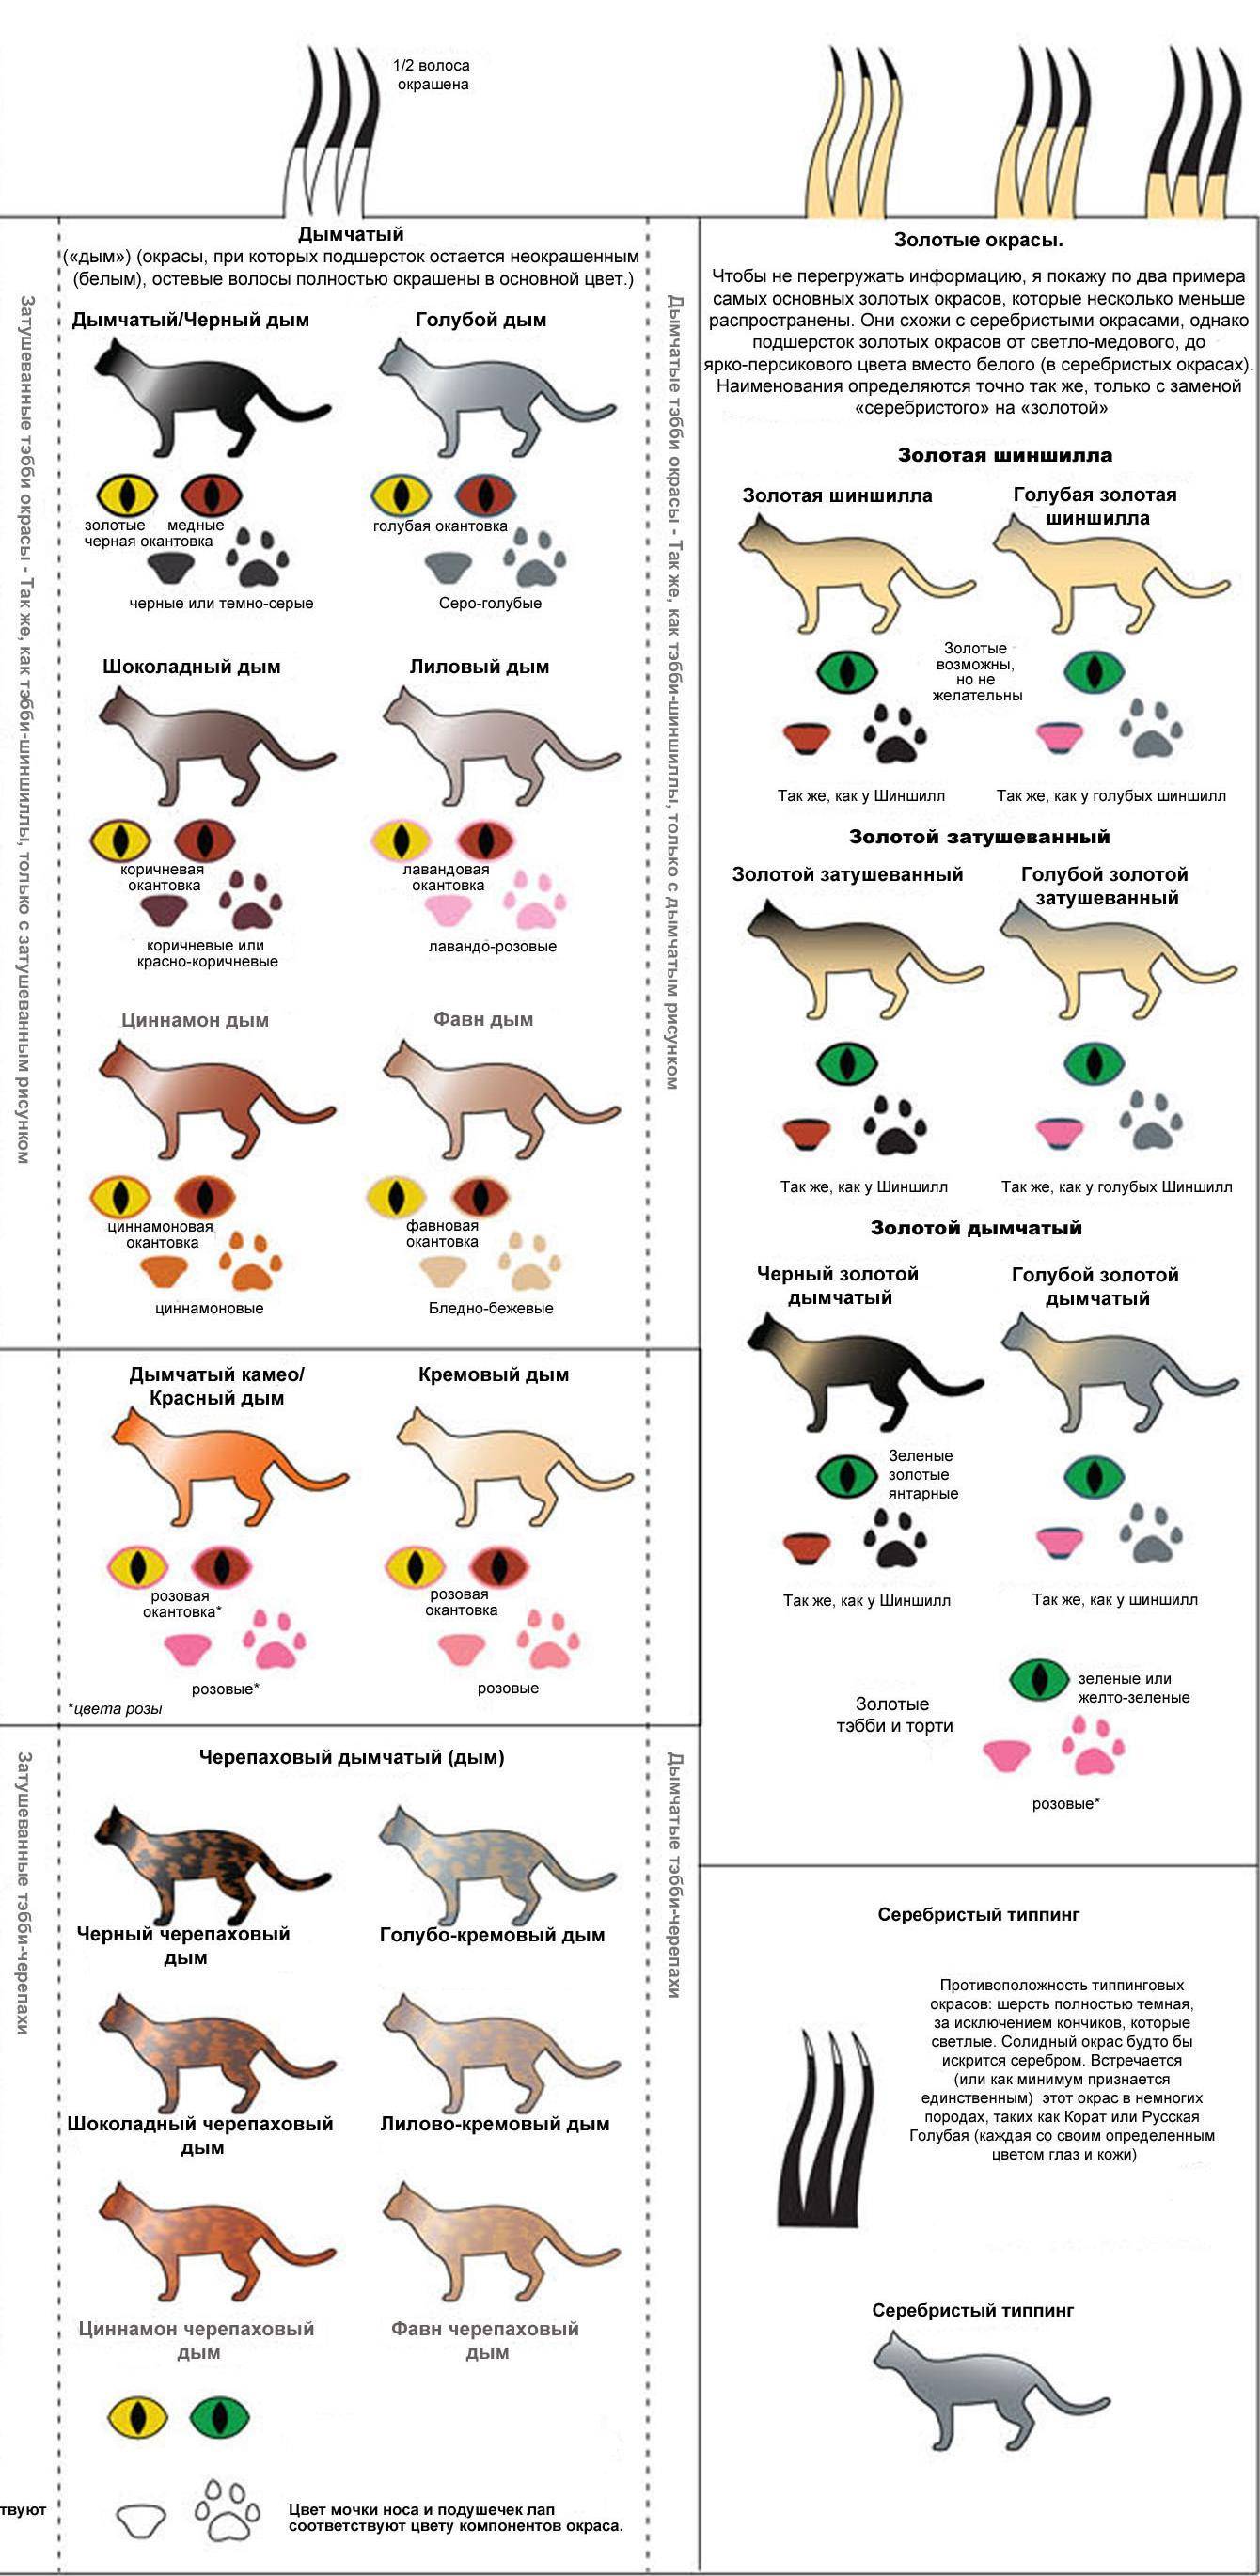 Окрасы британцев таблица. Классификация окраса шотландских кошек. Окрасы британских кошек таблица обозначений. Генетика окрасов ориентальных кошек таблица. Типы окрасов кошек